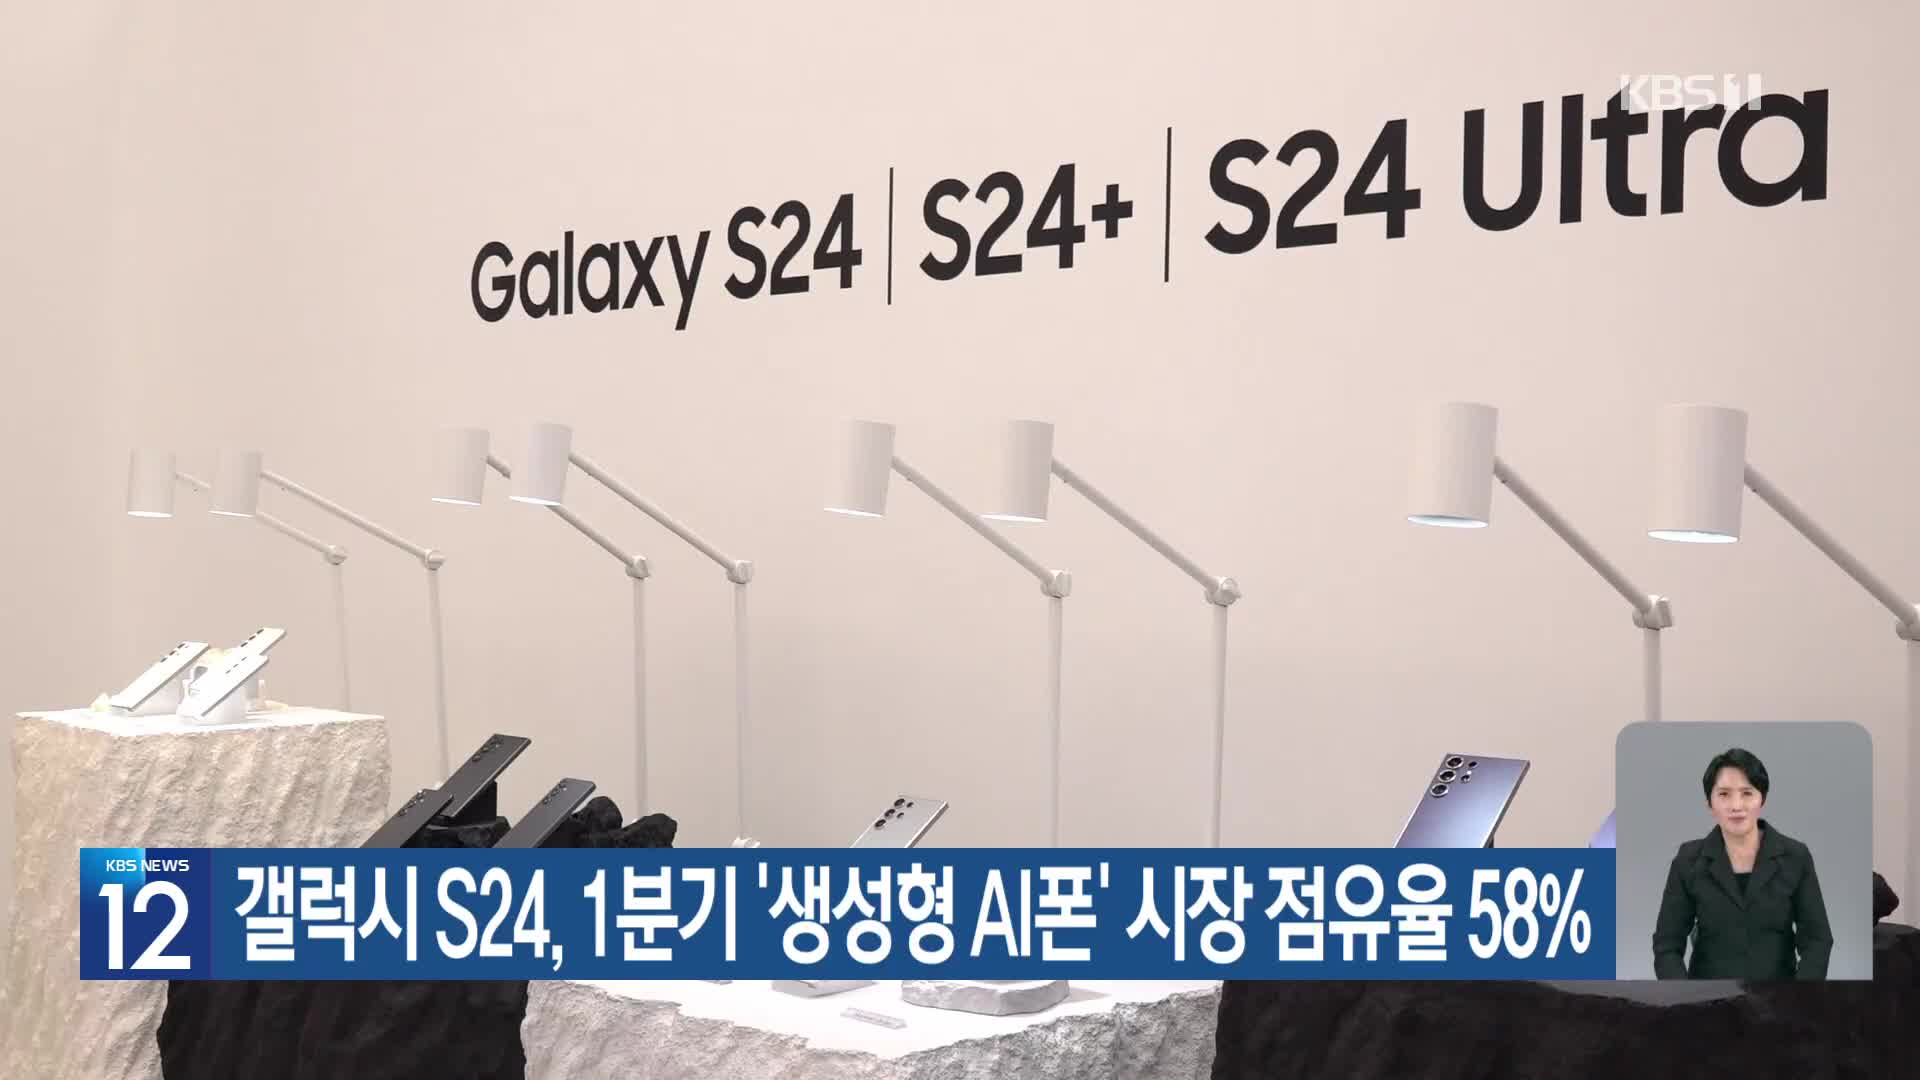 갤럭시 S24, 1분기 ‘생성형 AI폰’ 시장 점유율 58%